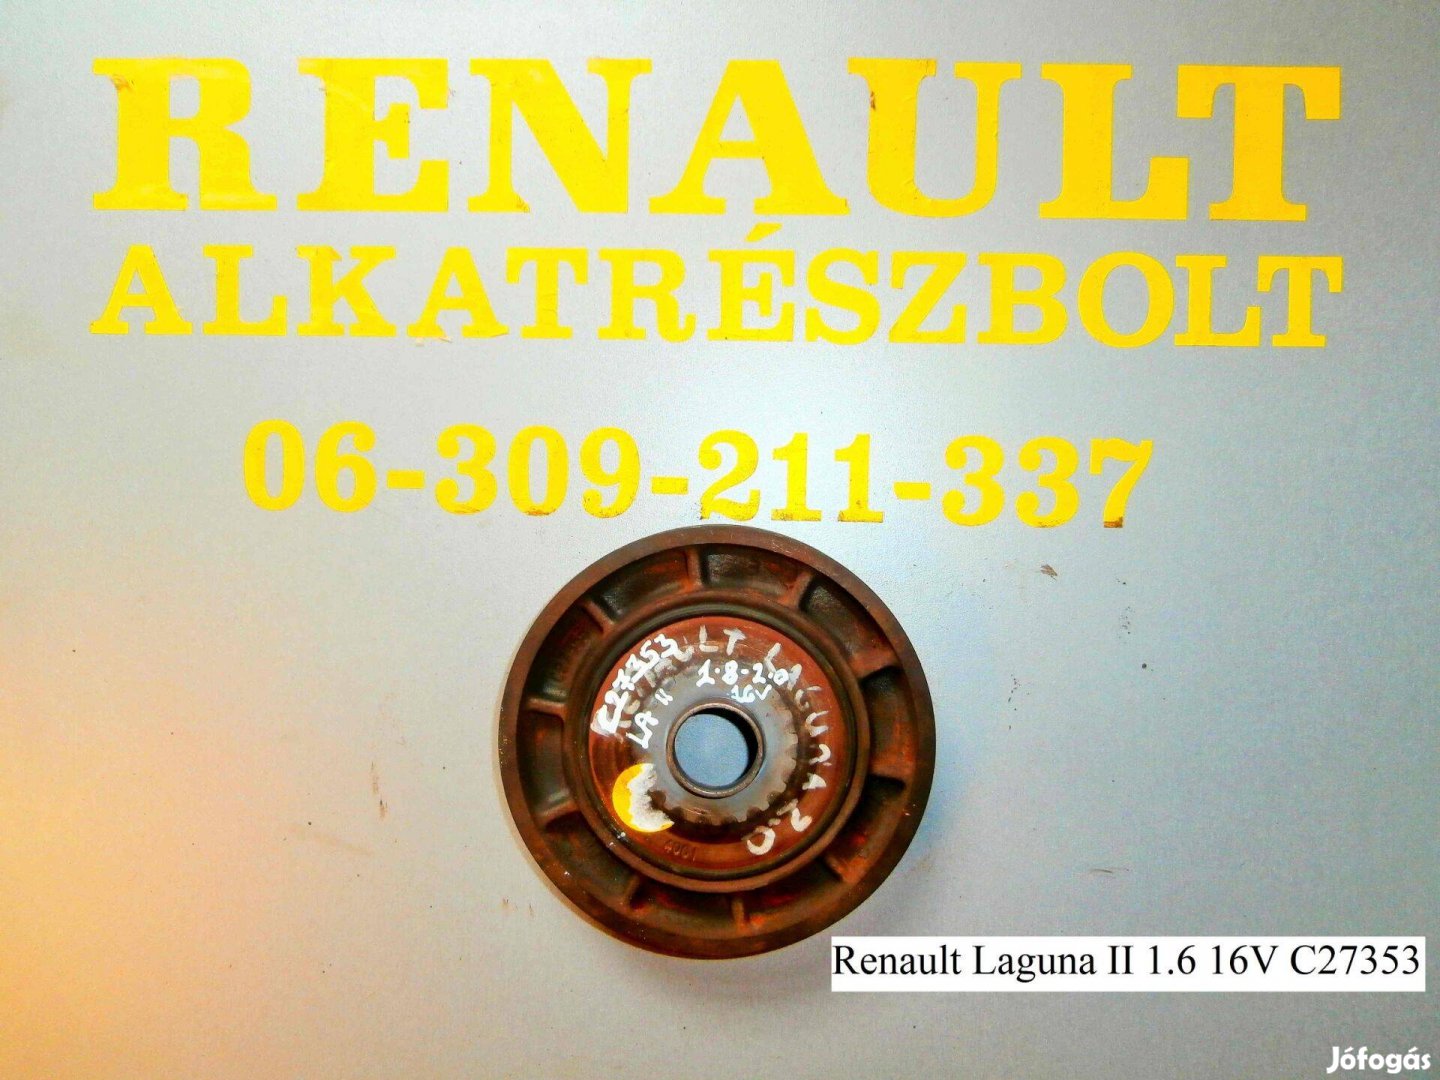 Renault Laguna II 1.6 16V C27353 főtengely ékszíjtárcsa